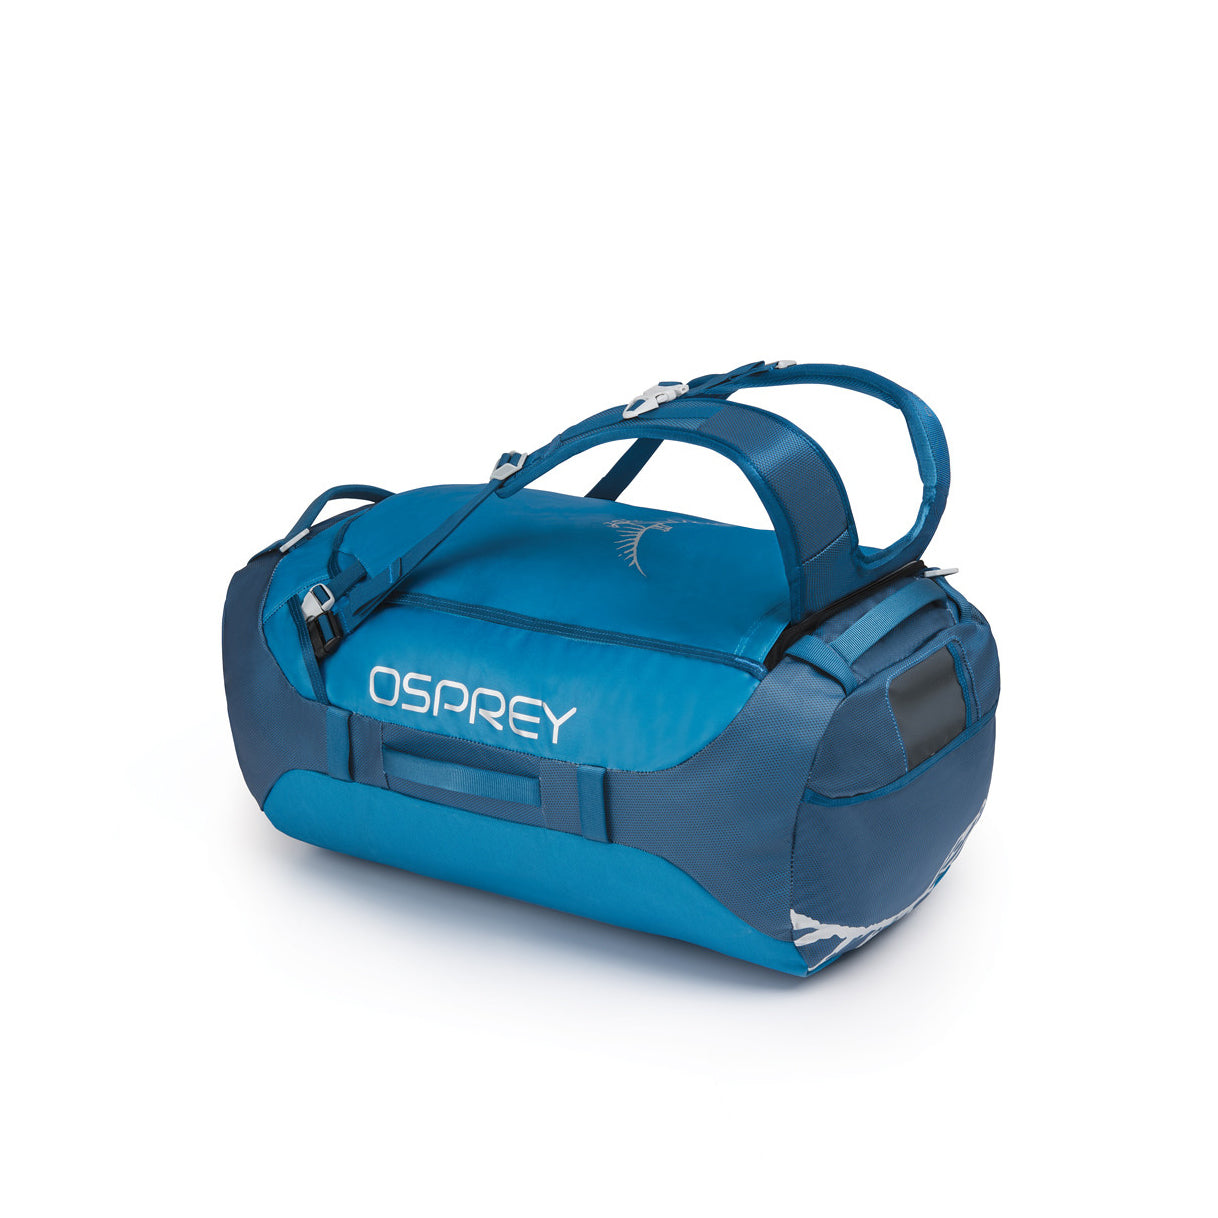 Osprey Transporter 65 Litre Duffel Bag Backpack